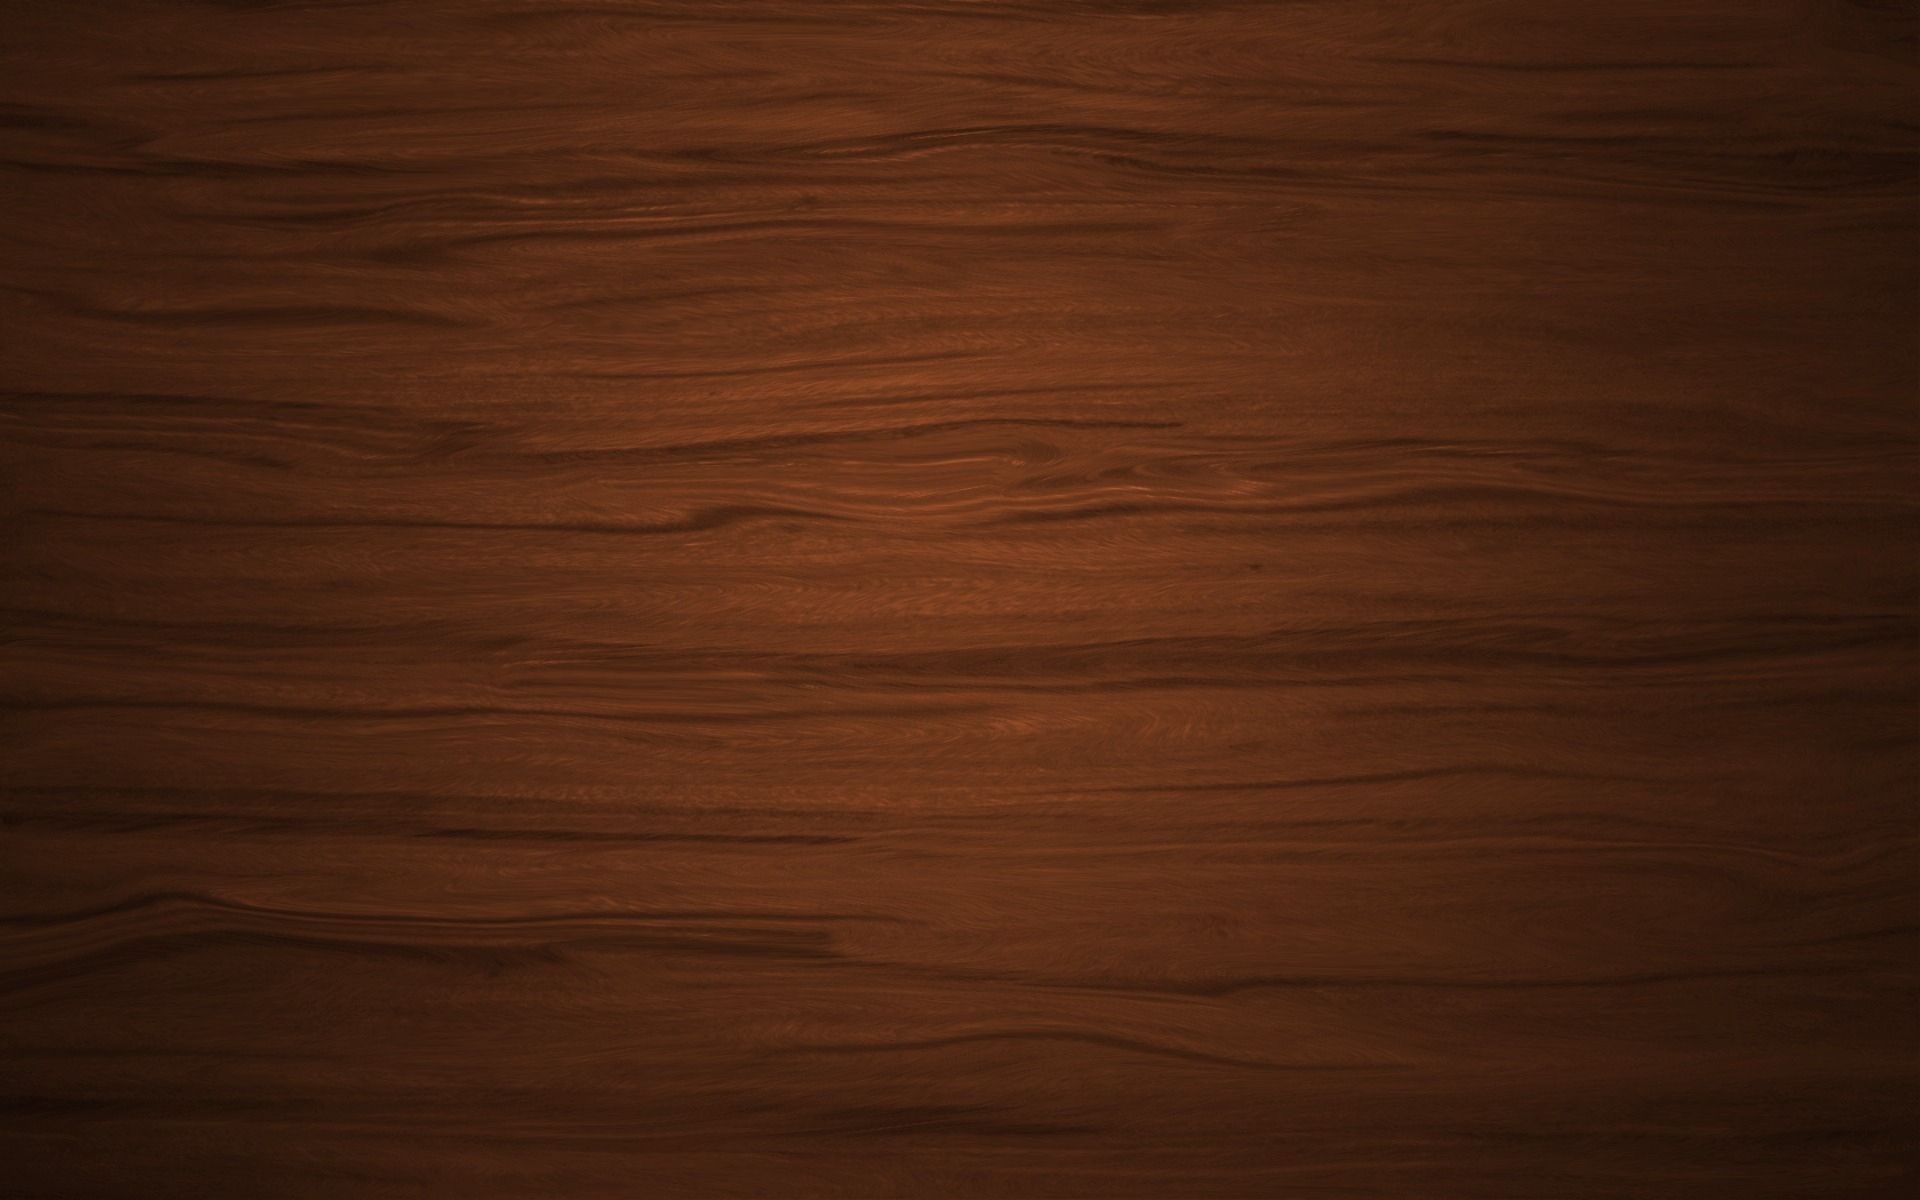 wood table wallpaper,wood,brown,hardwood,wood stain,wood flooring